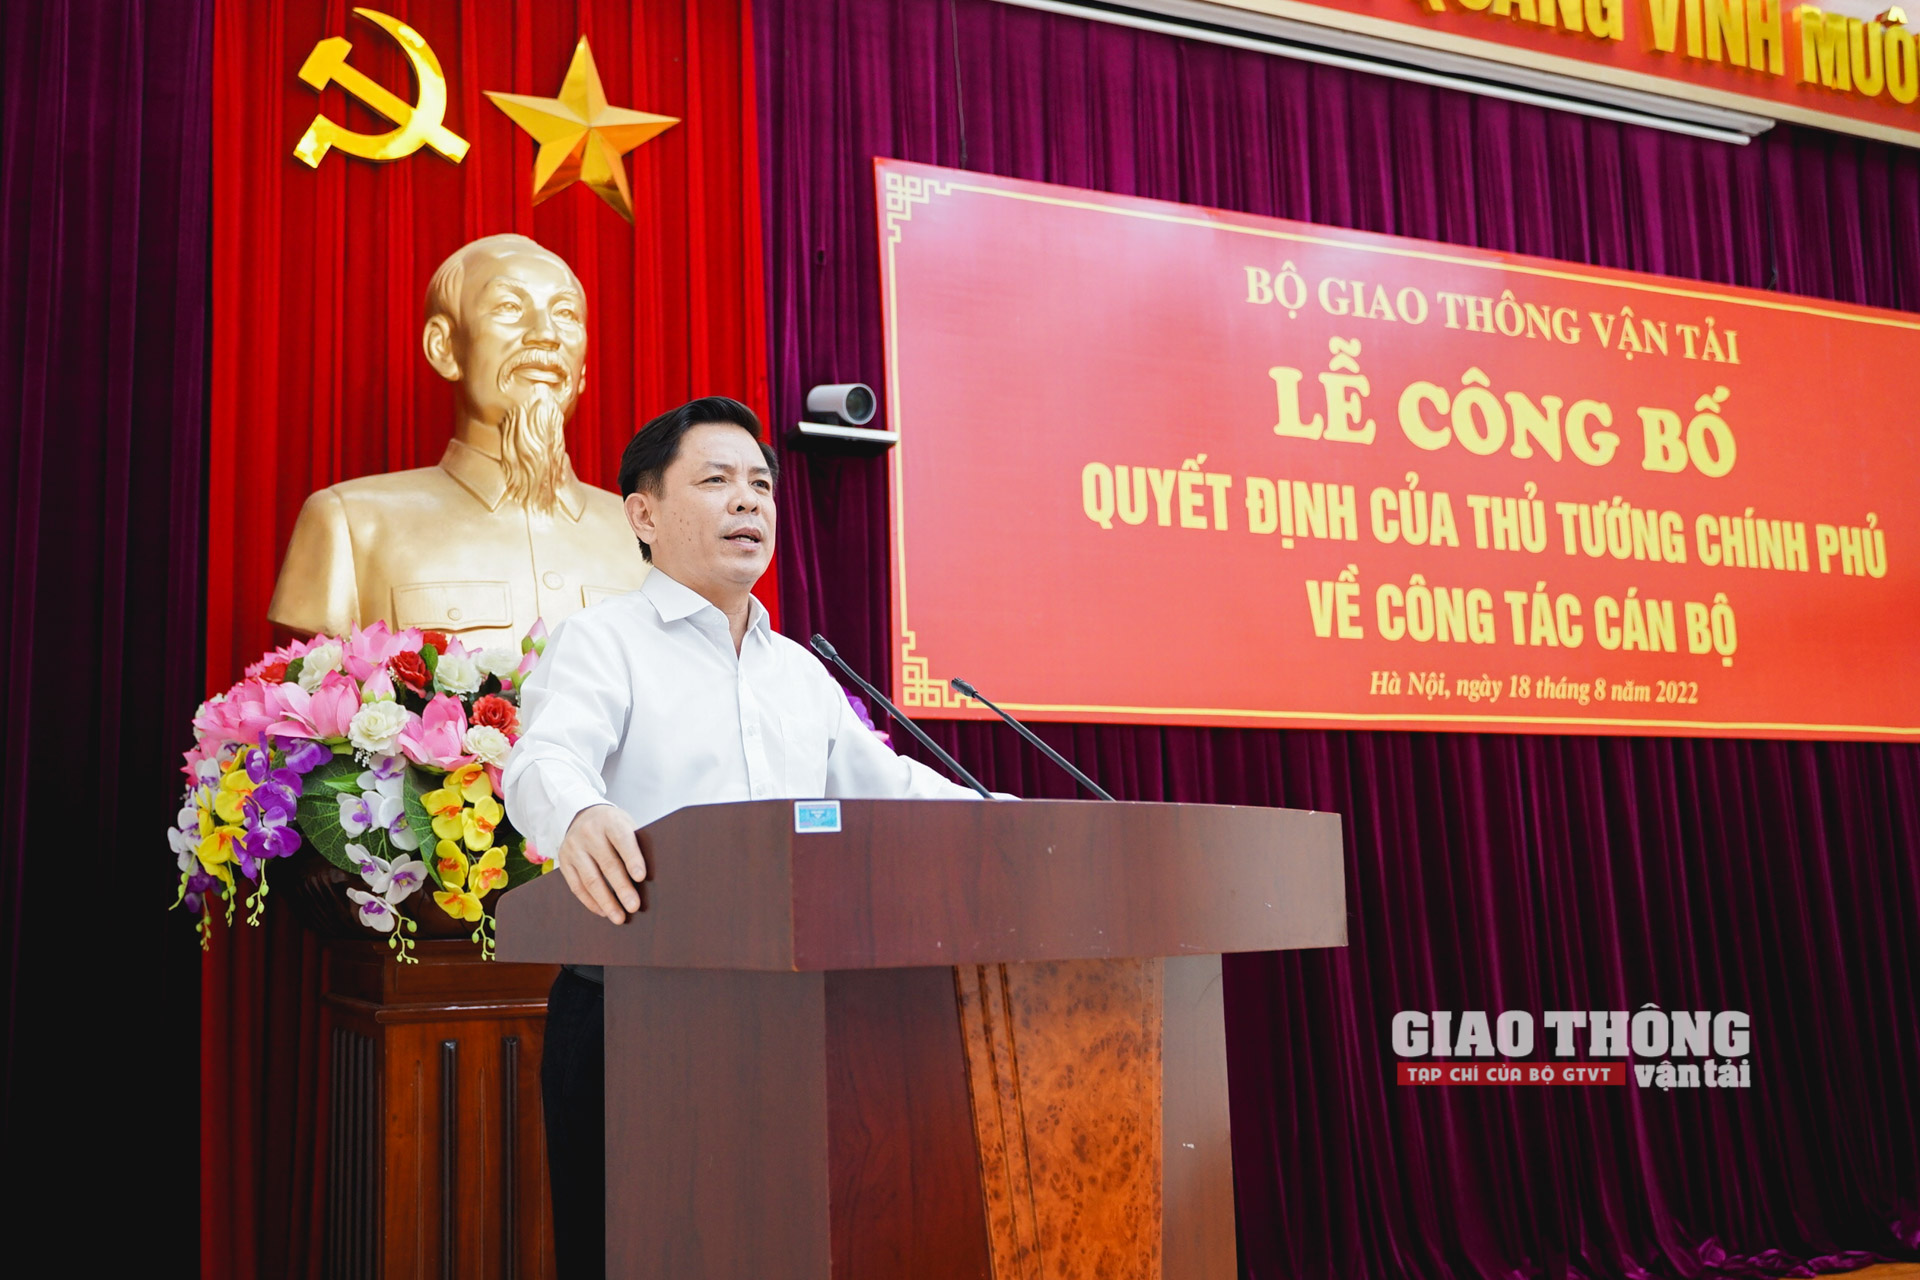 Bộ trưởng Nguyễn Văn Thể phát biểu tại buổi lễ